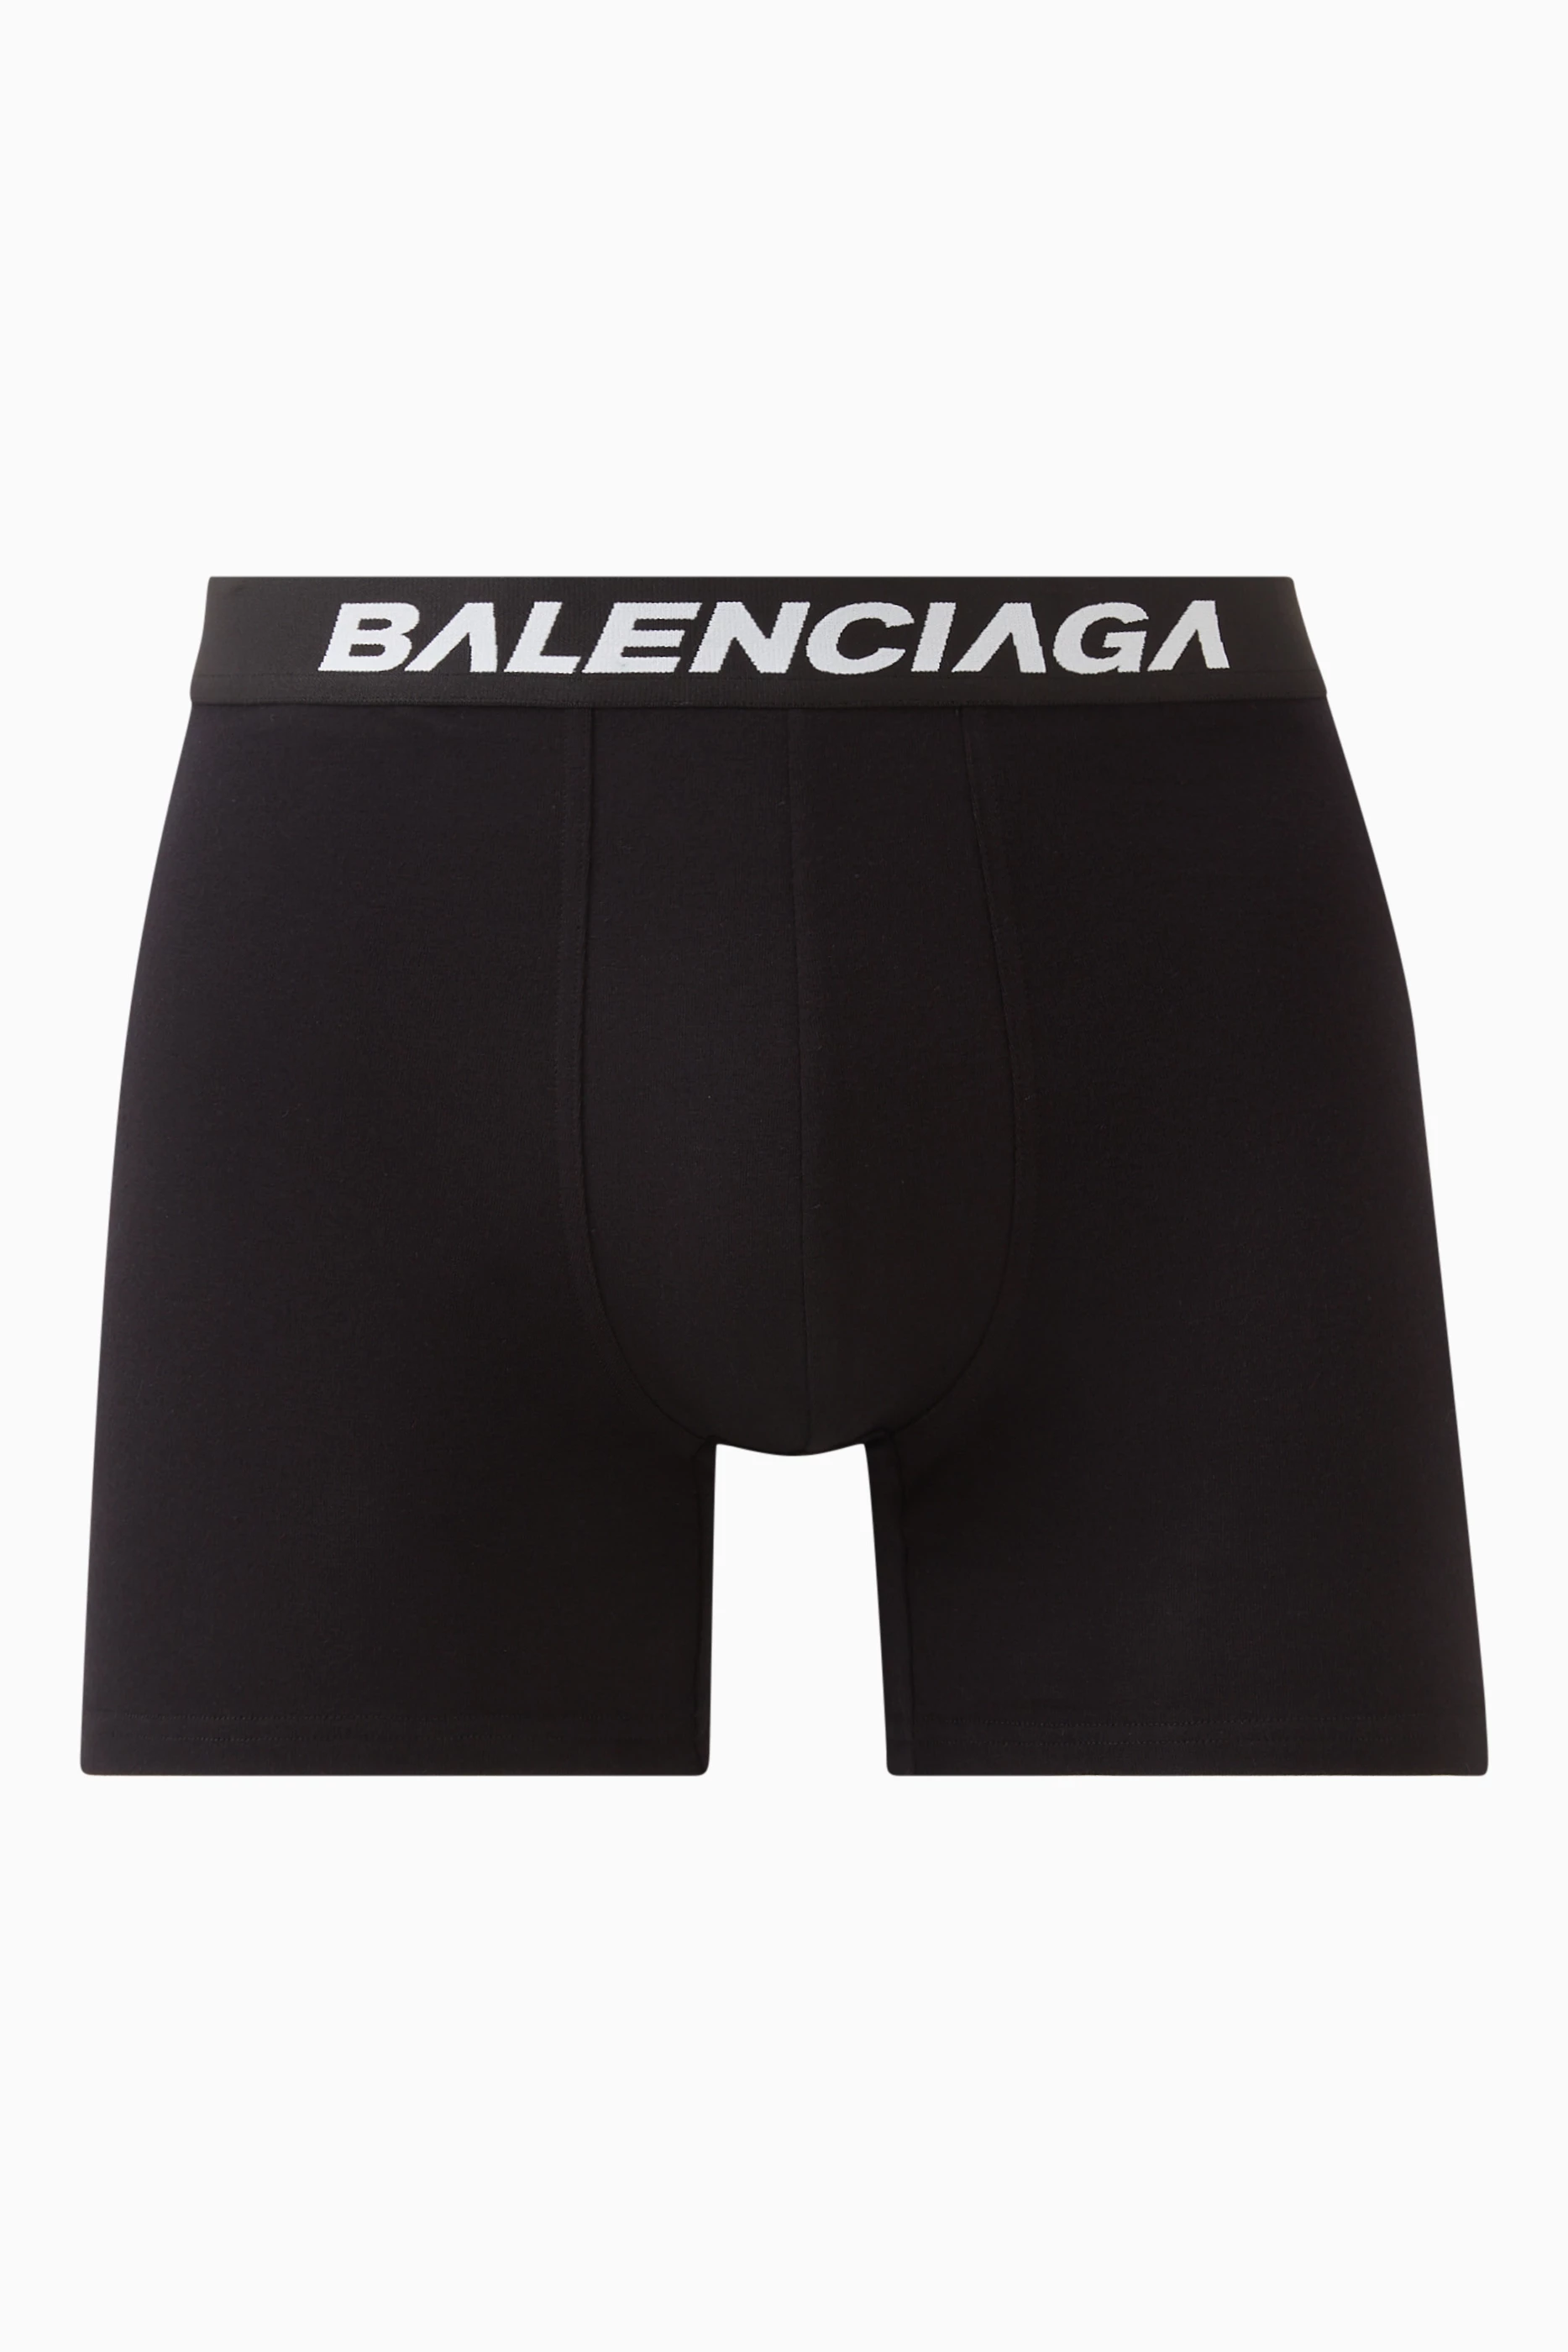 Buy Balenciaga Black Racer Boxer Briefs in Cotton Jersey for Men in Oman